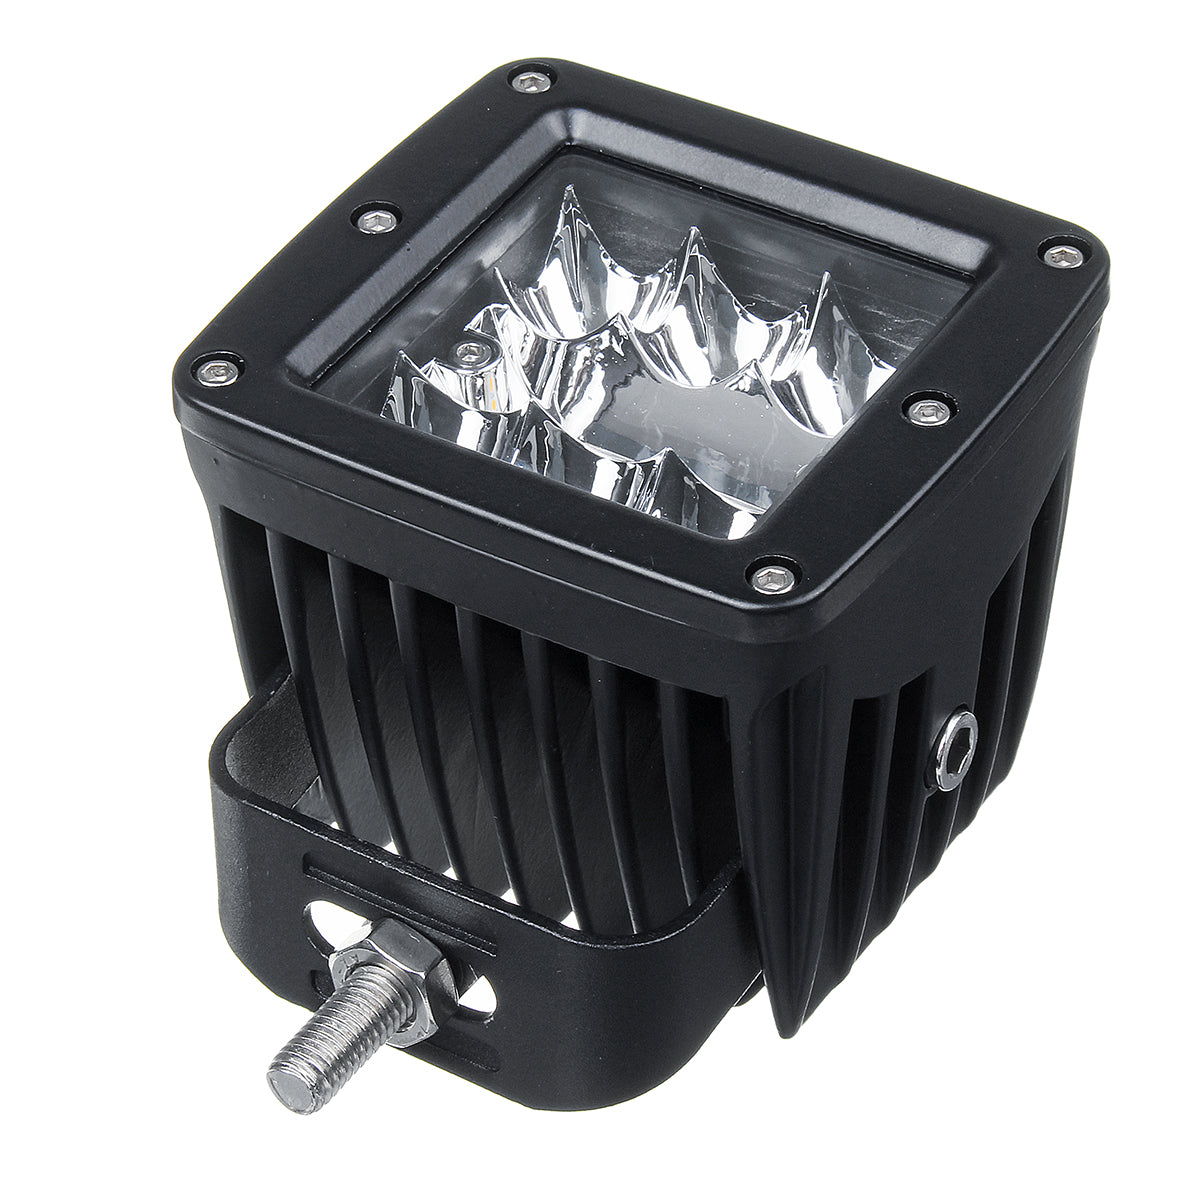 Dark Slate Gray 12W LED Work Light Bars Combo Beam White+Amber Driving Fog Lamp for 12V/24V Off Road SUV ATV UTV 4WD Trailer